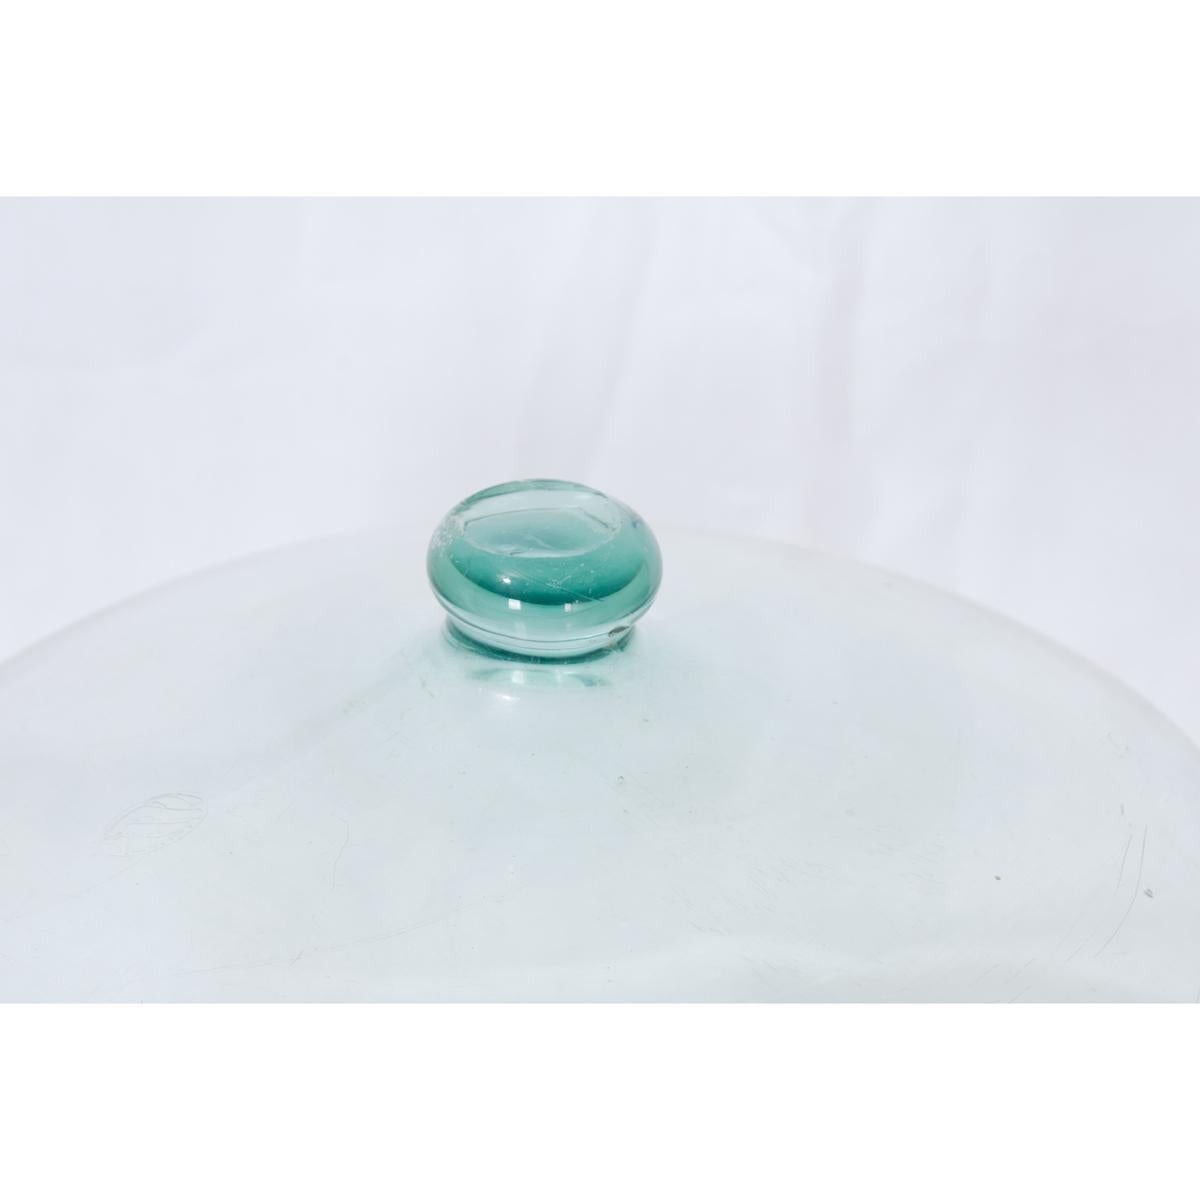 Grande cloche de jardin en verre soufflé pour melon. Formé d'une seule pièce de verre transparent avec une poignée solide en forme de bouton. Celui-ci a une forme unique et irrégulière, avec des défauts et des imperfections qui ajoutent à ses